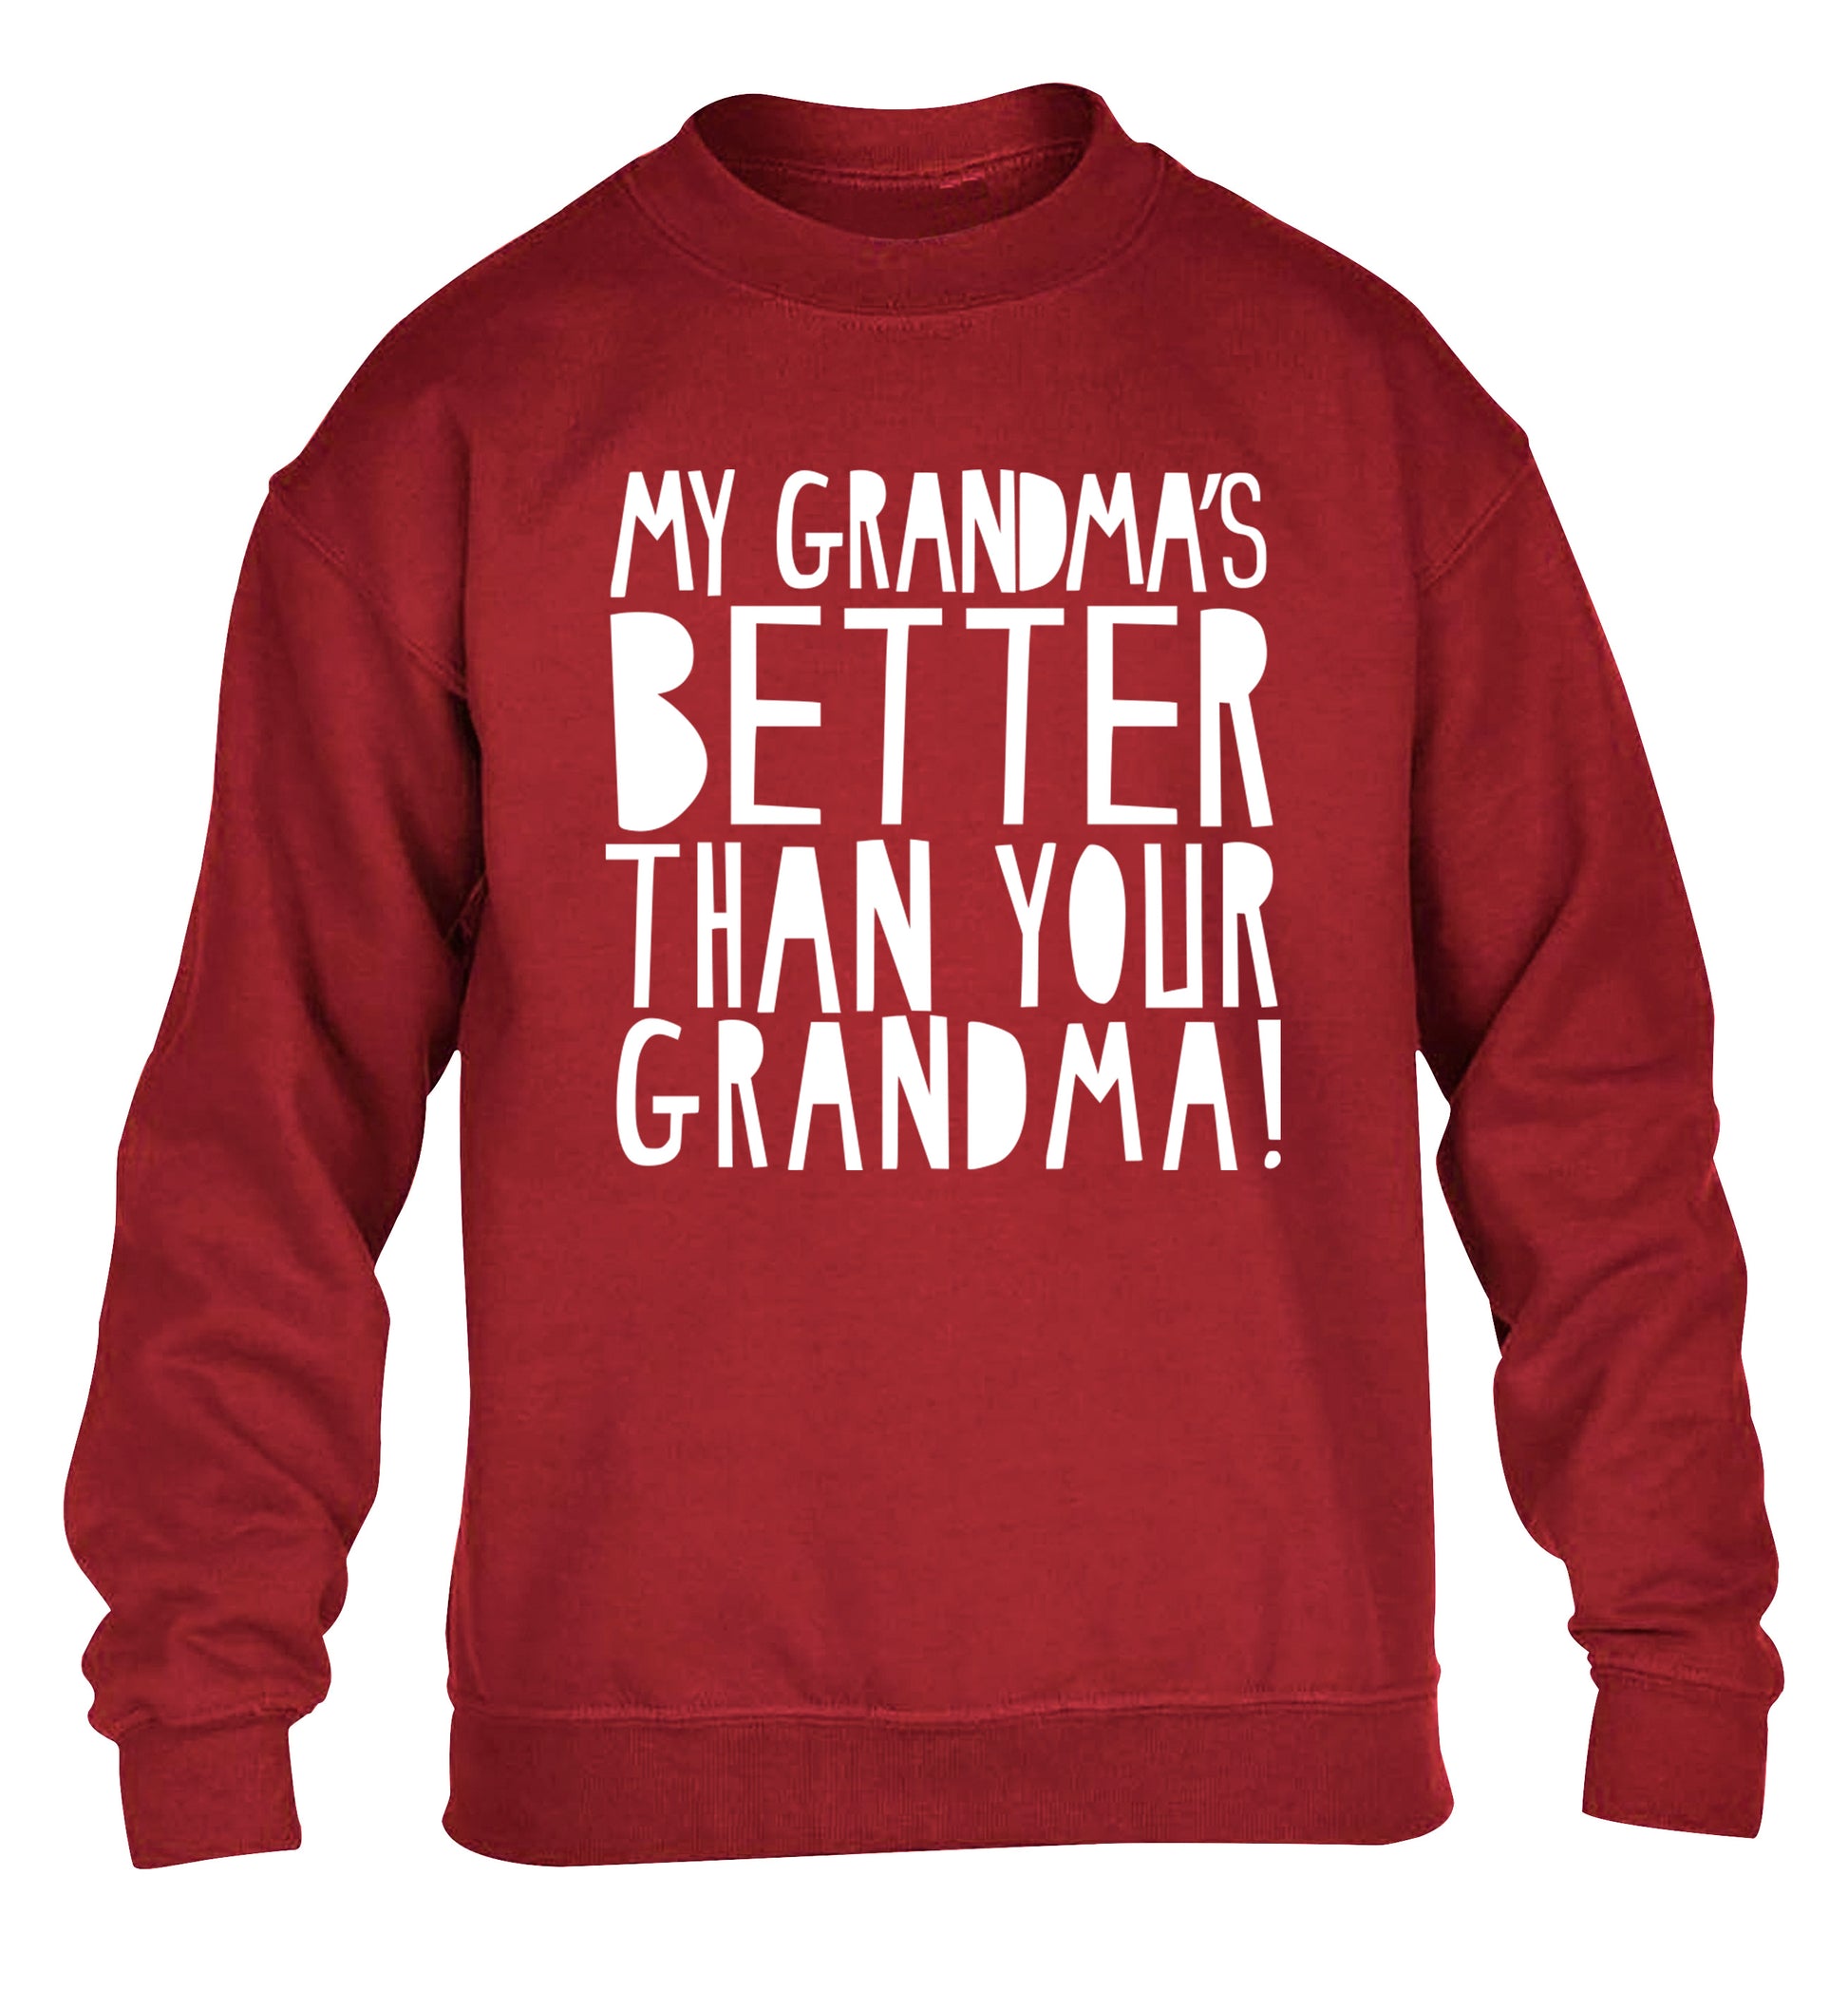 My grandma's better than your grandma children's grey sweater 12-13 Years